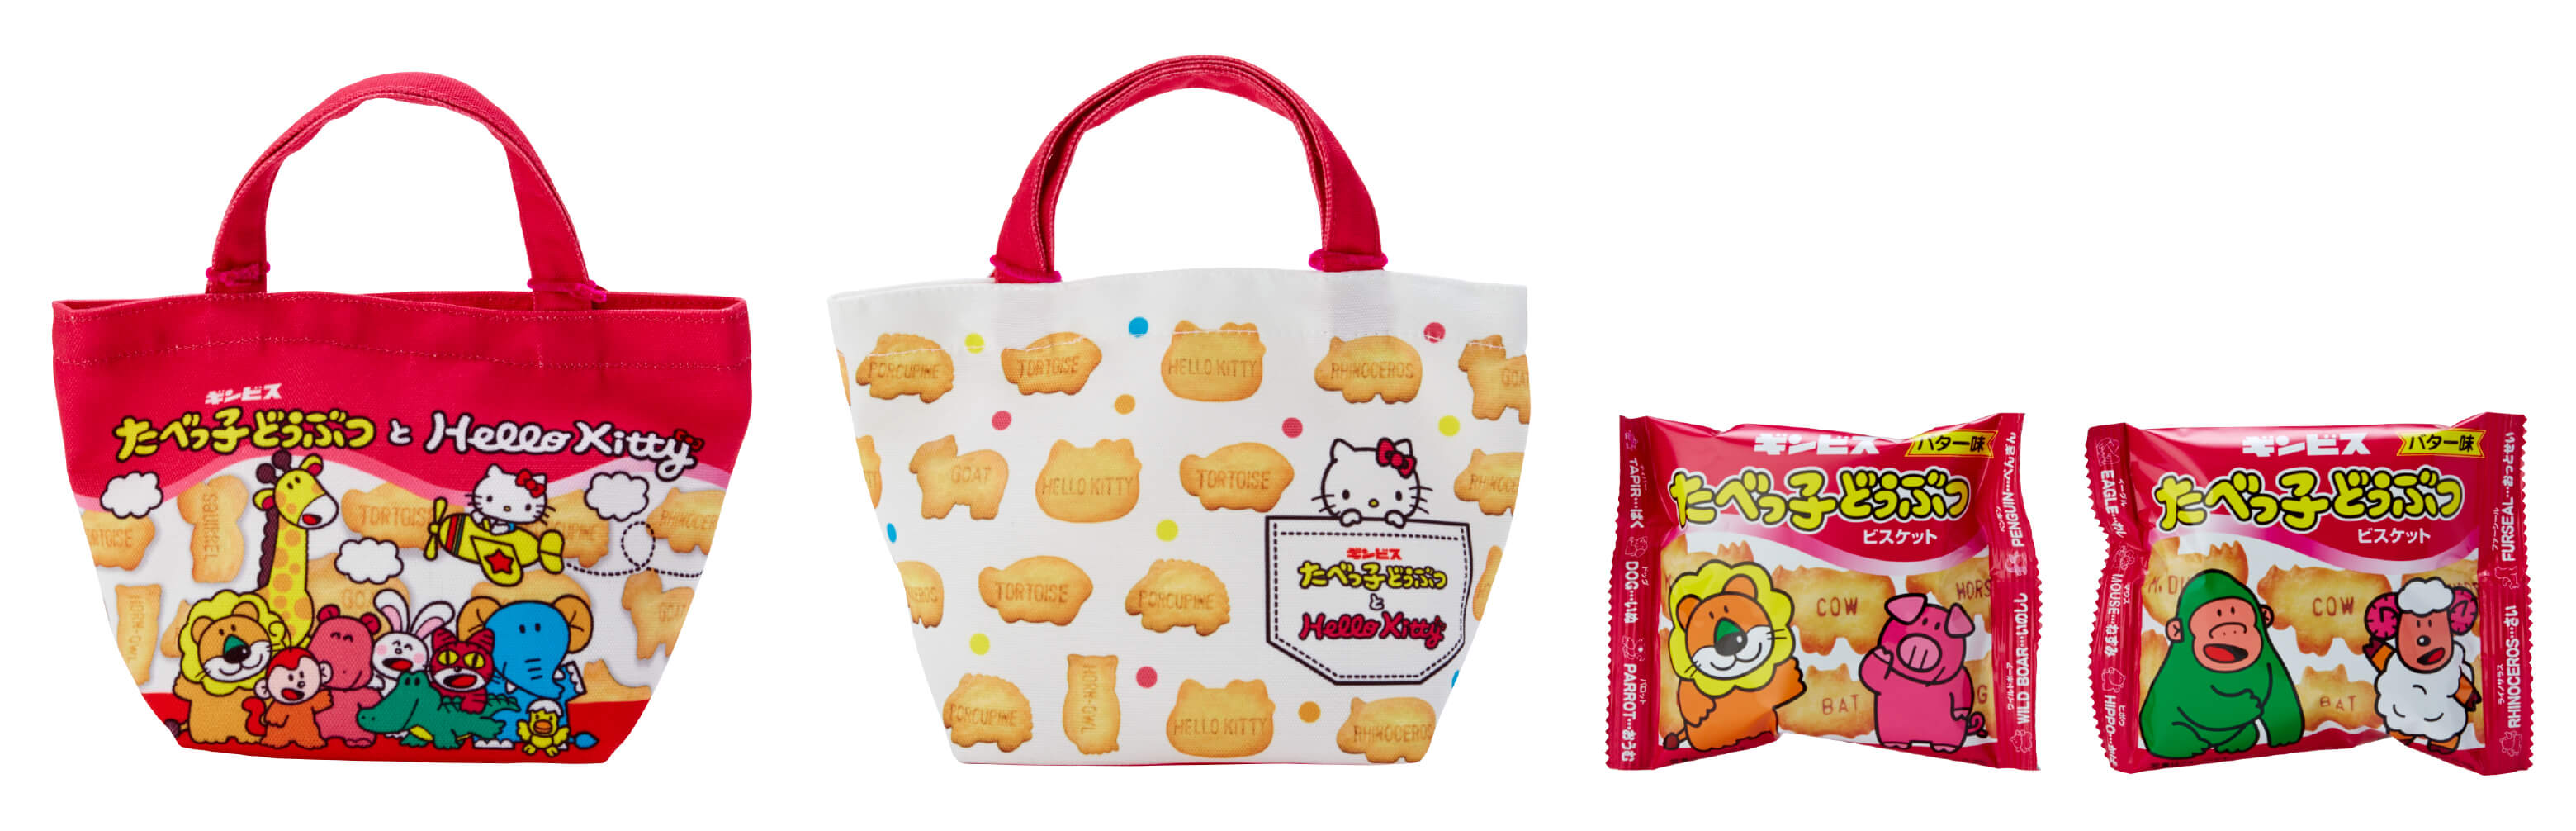 ハローキティ たべっ子どうぶつ Hello Kitty snacks Sanrio_tabekko_bag